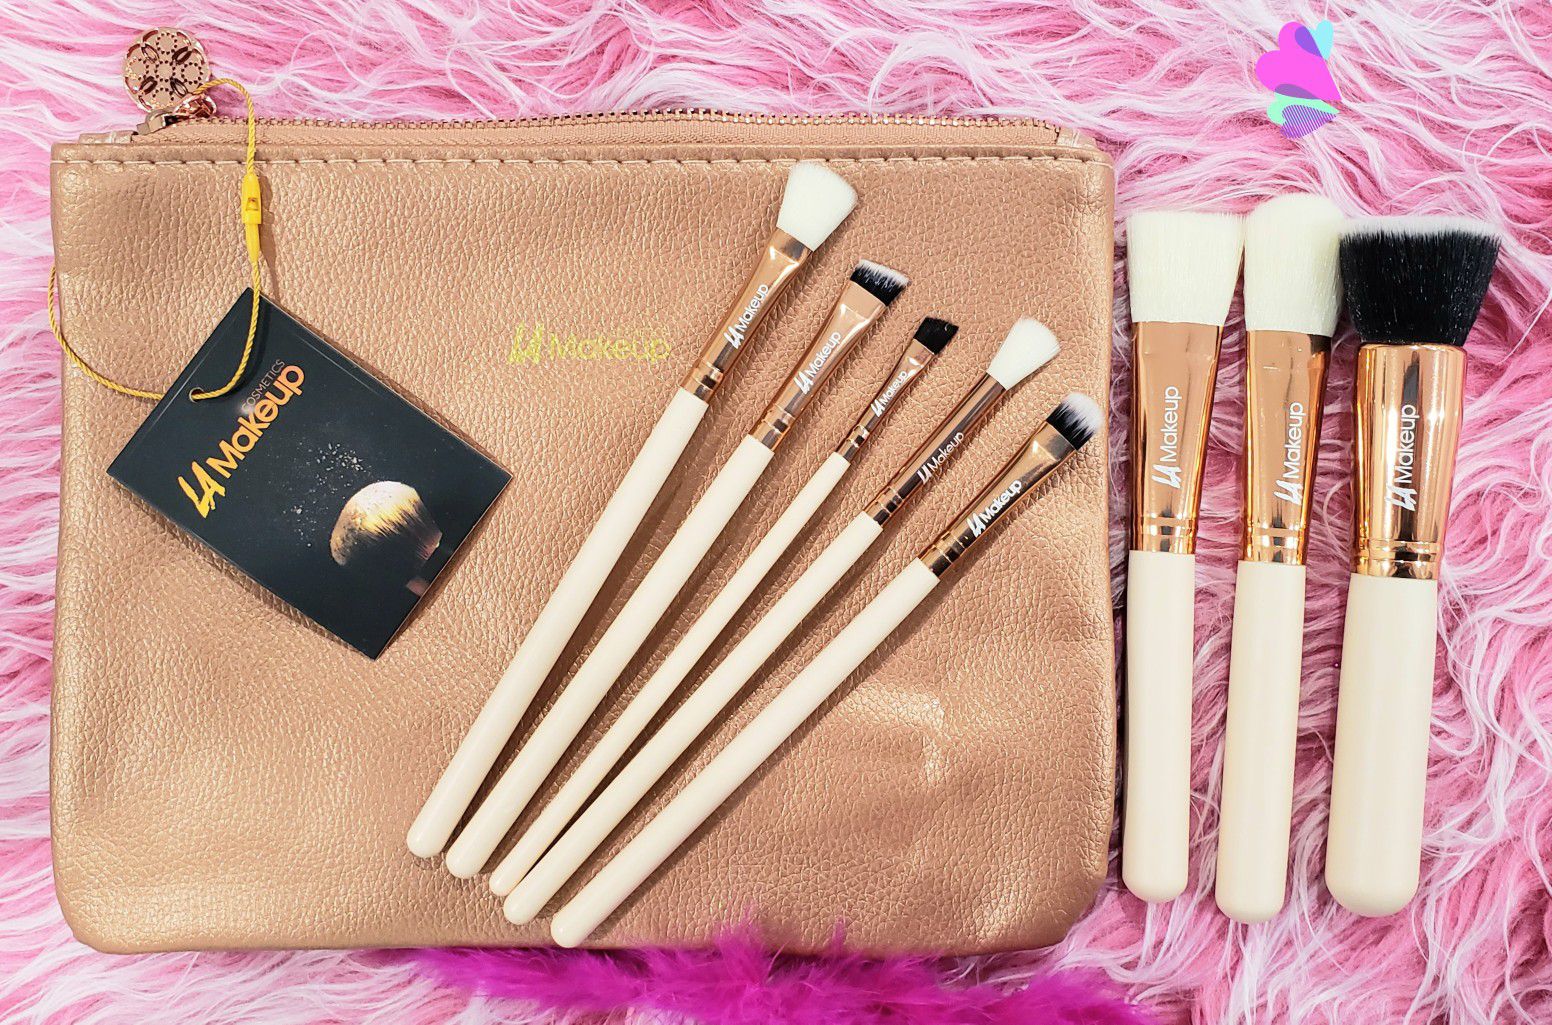 8pcs Makeup Brush set with cosmetic bag